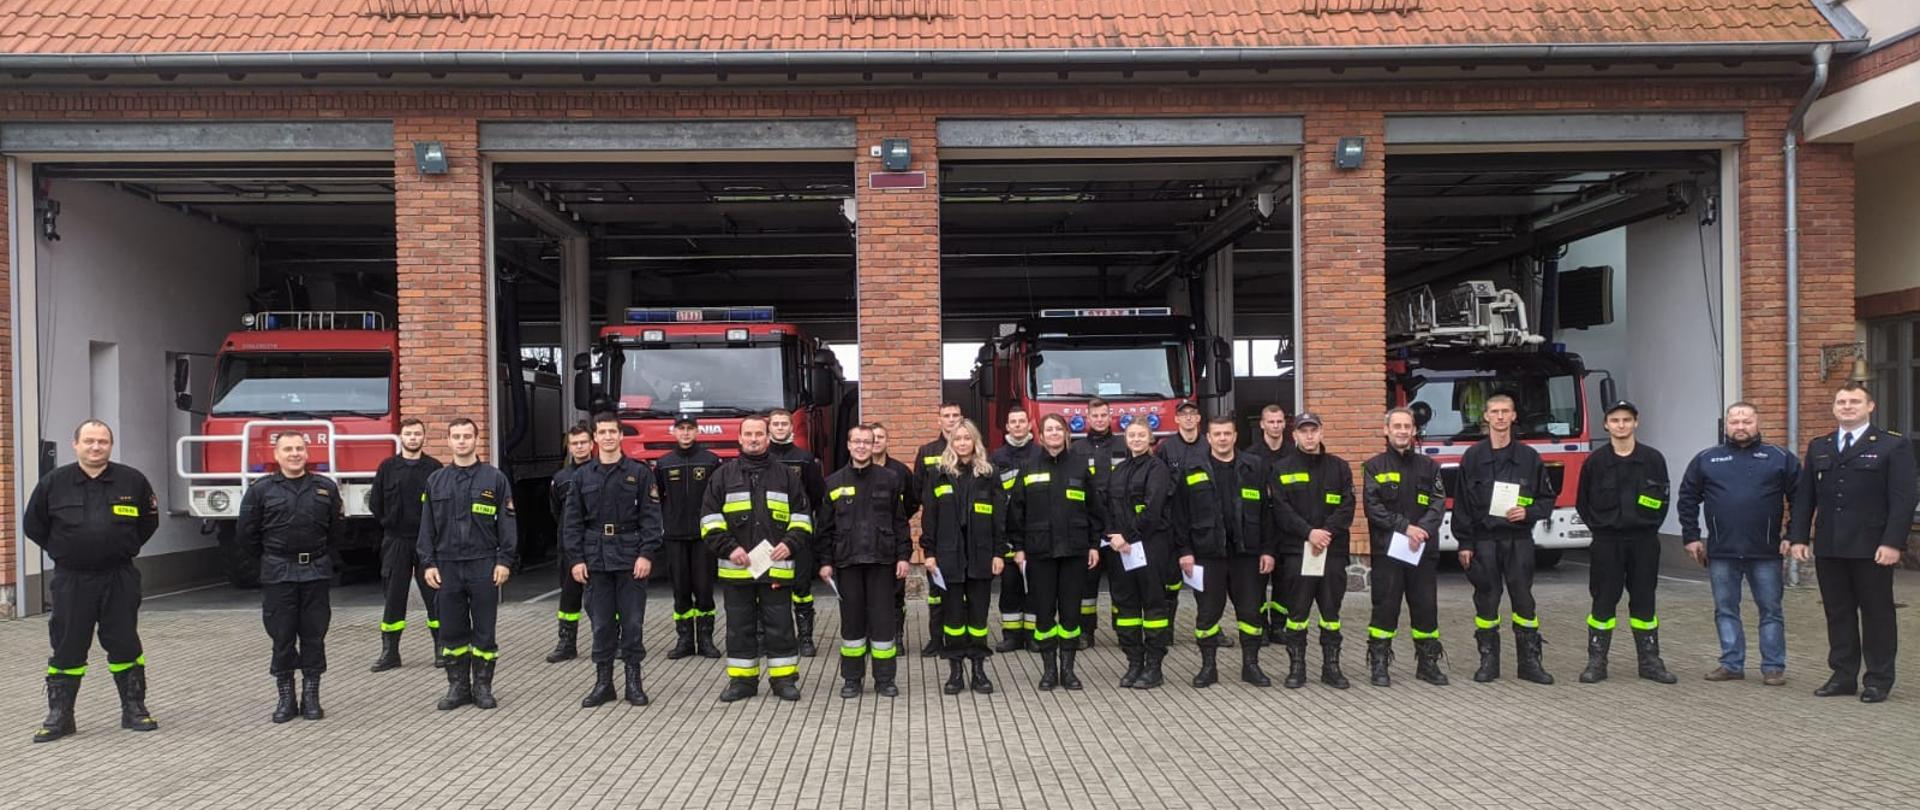 Zdjęcie przedstawia m.in. absolwentów szkolenia podstawowego strażaków ratowników OSP z zaświadczeniami o jego ukończeniu oraz zespół egzaminacyjny, na tle pojazdów pożarniczych stacjonujących w garażu Komendy Powiatowej Państwowej Straży Pożarnej w Gołdapi